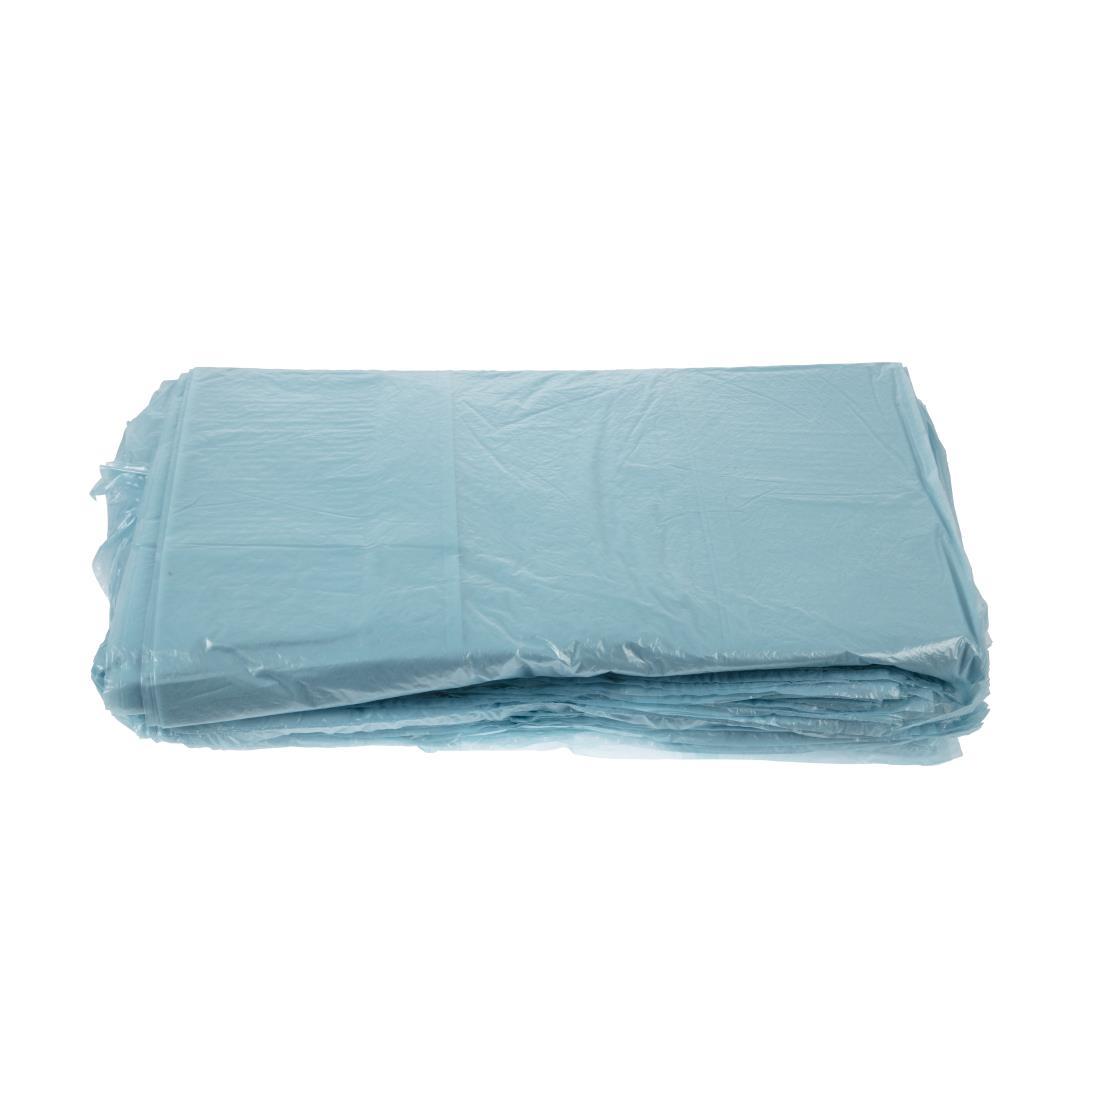 Jantex Large Medium Duty Blue Bin Bags 80Ltr (Pack of 200) - GK686  - 4